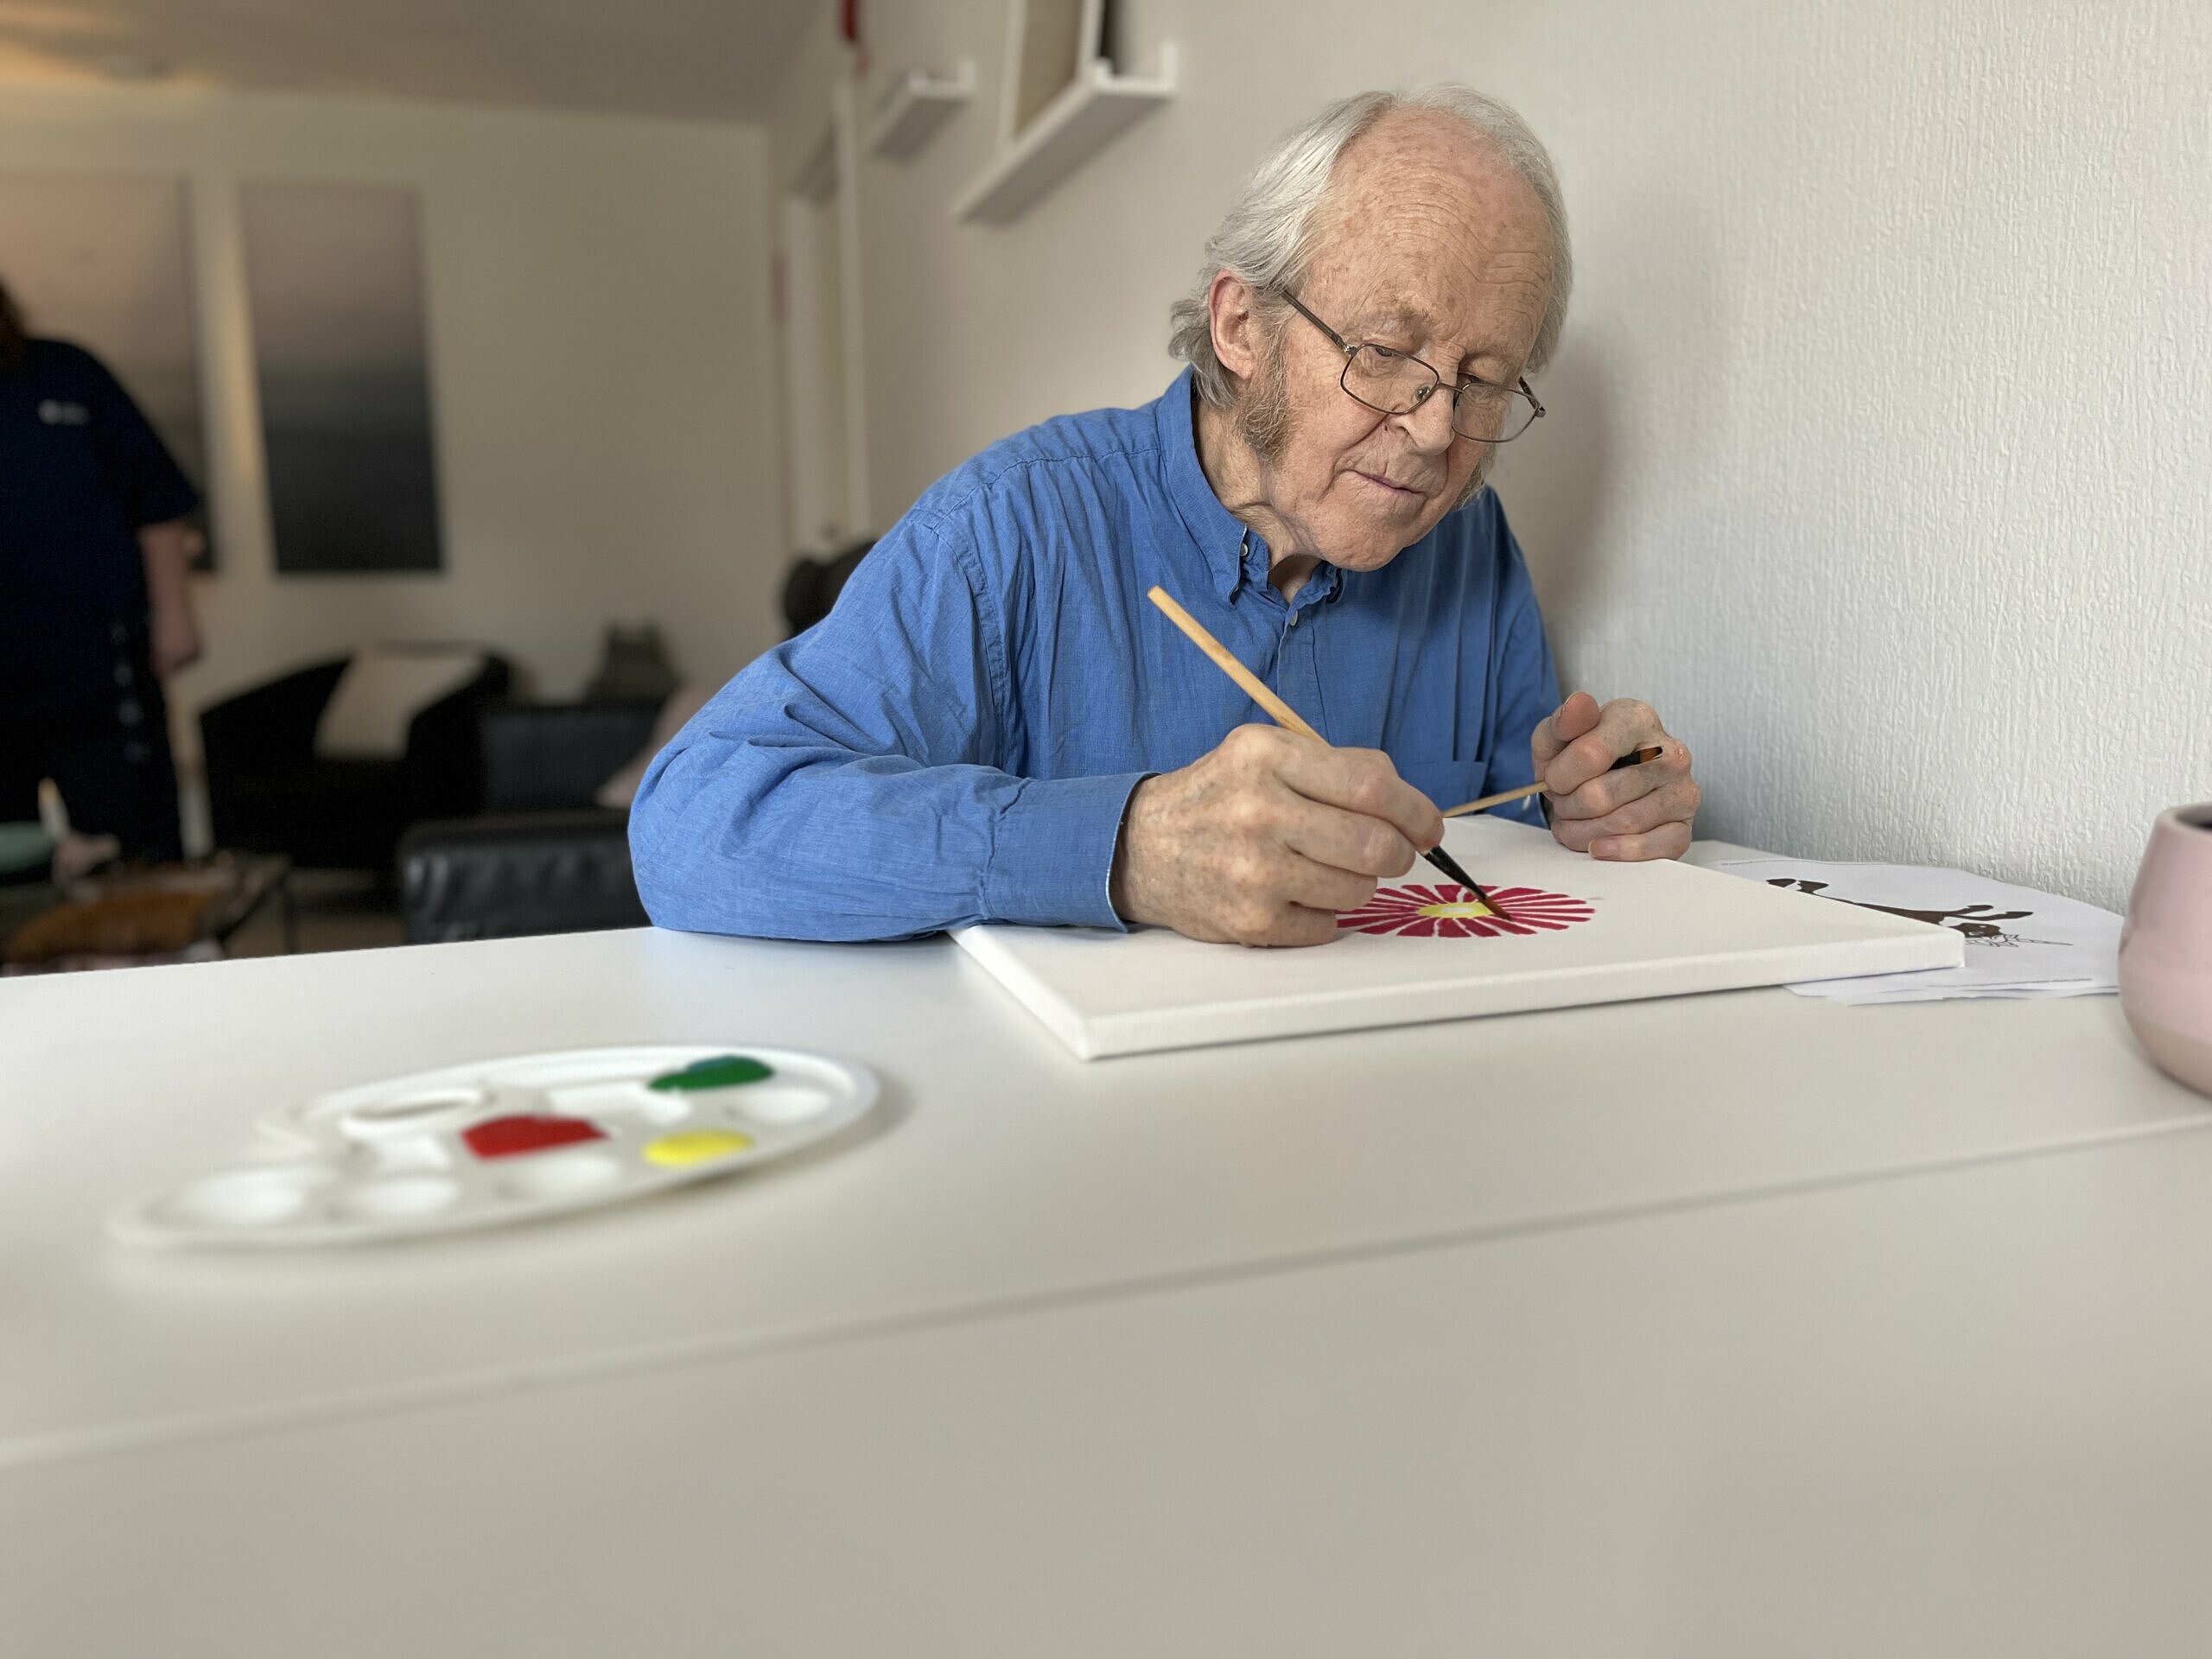 En man sitter vid matbordet och målar en tavla. Framför honom ligger en palett med tre färger: rött, gult och grönt. Han verkar måla en blomma.